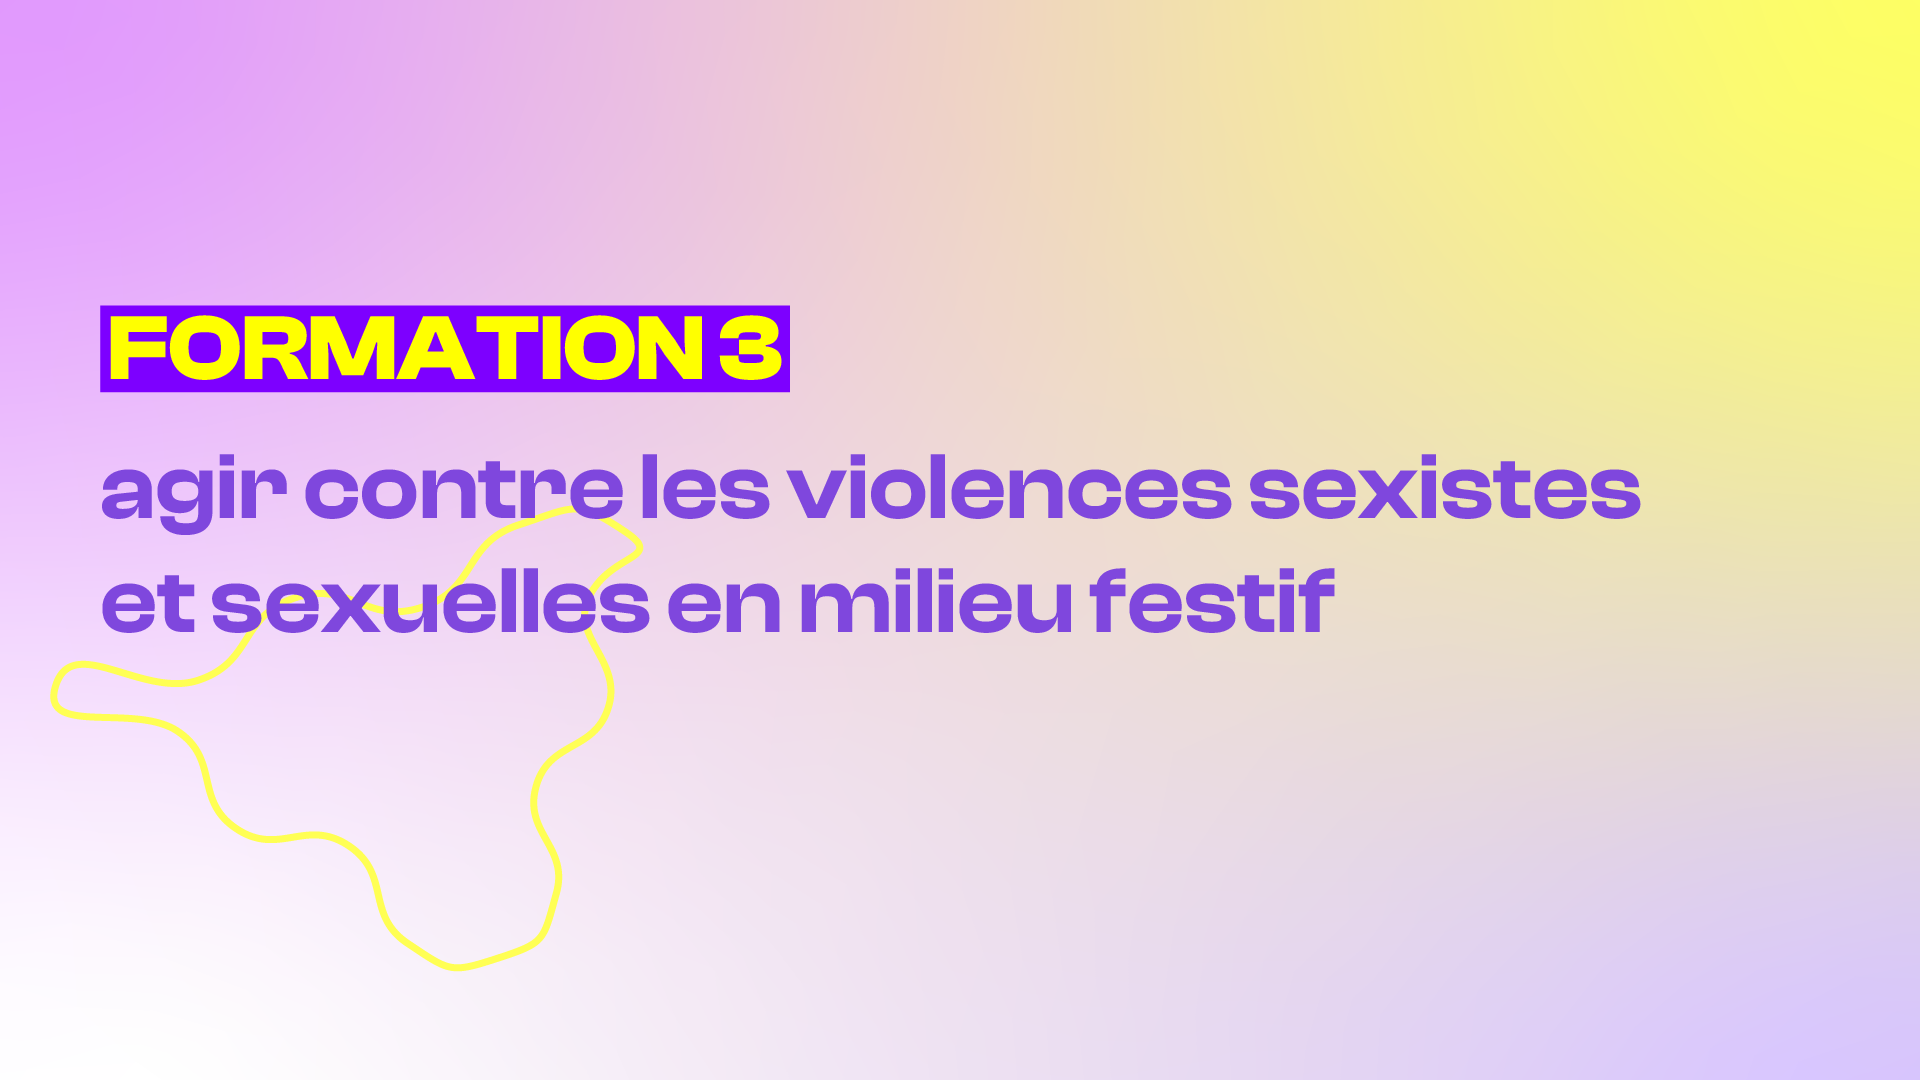 Training representation : FORMATION 3 - AGIR CONTRE LES VIOLENCES SEXISTES ET SEXUELLES EN MILIEU FESTIF 